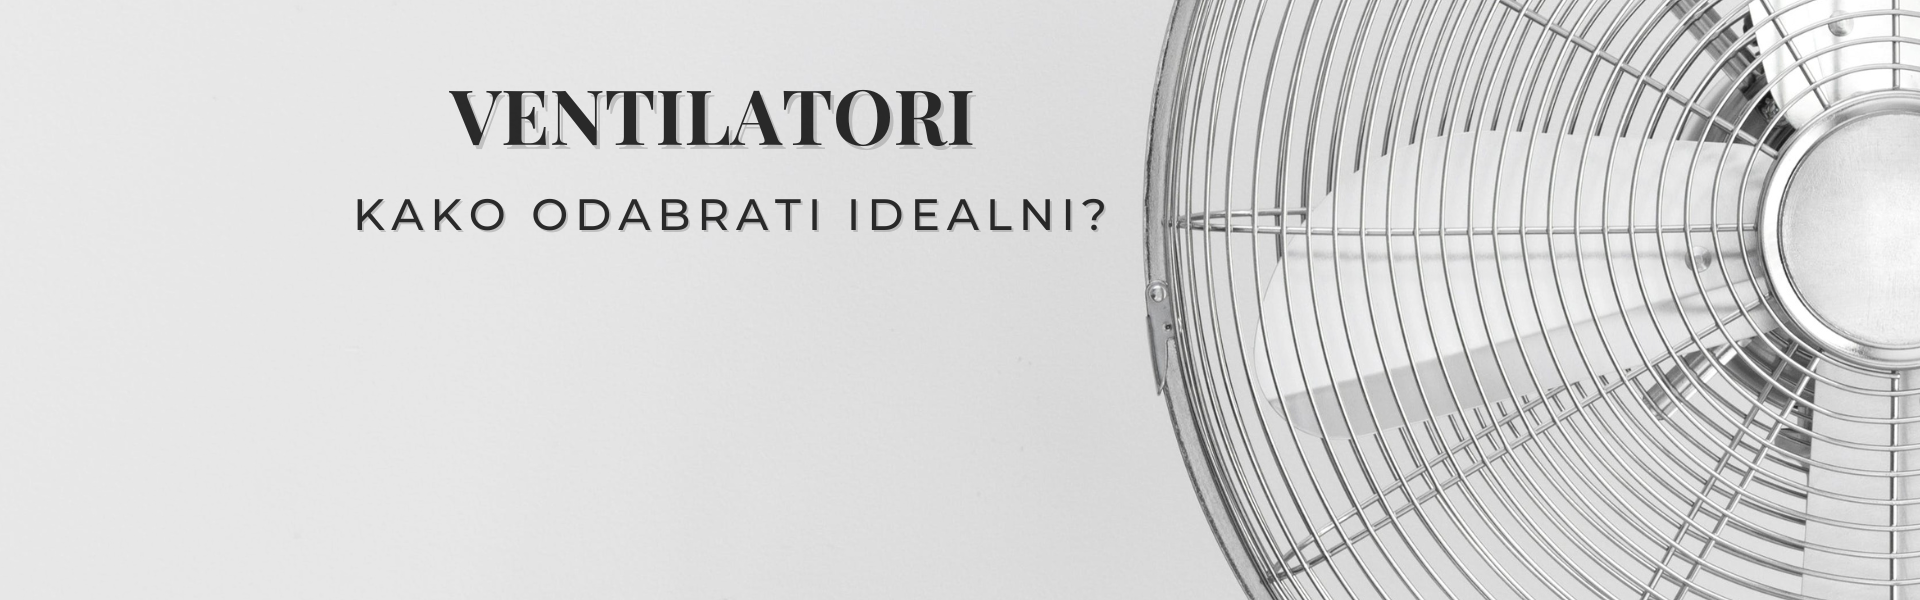 Kako odabrati idealni ventilator?